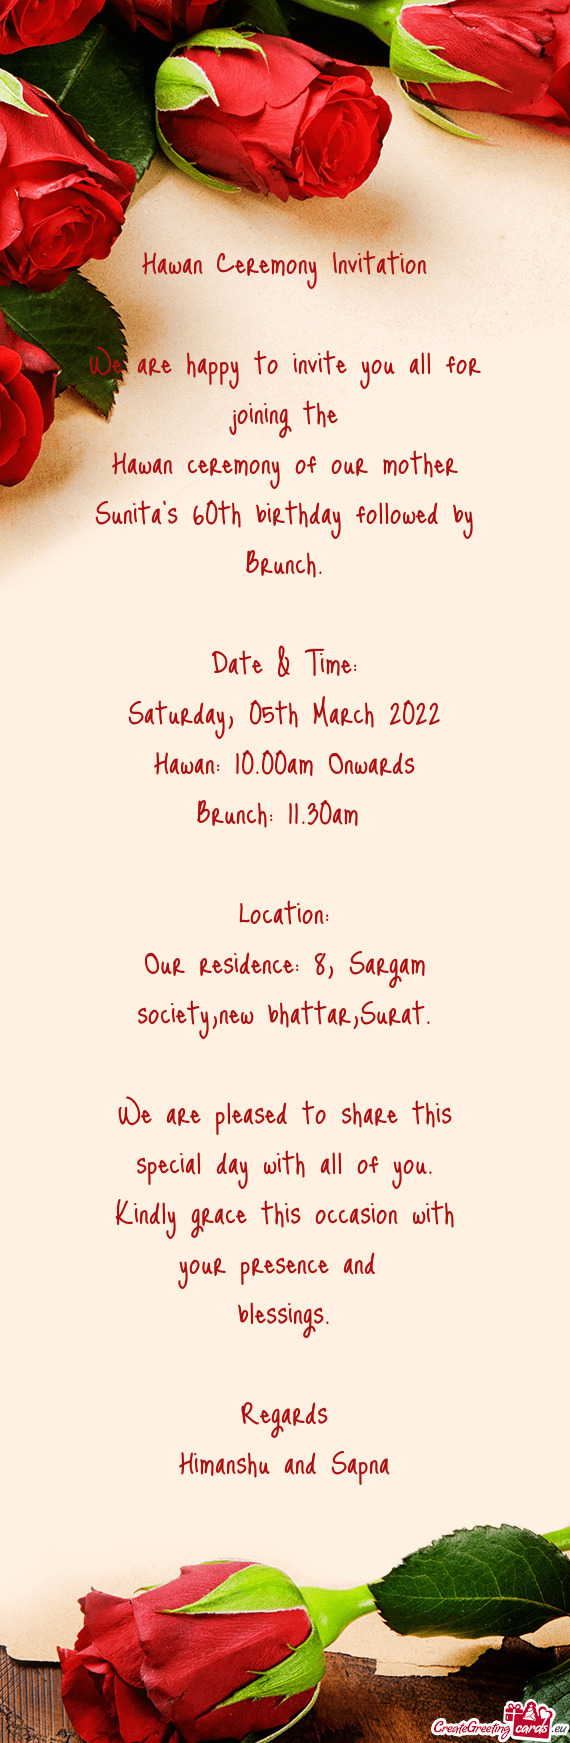 Saturday, 05th March 2022